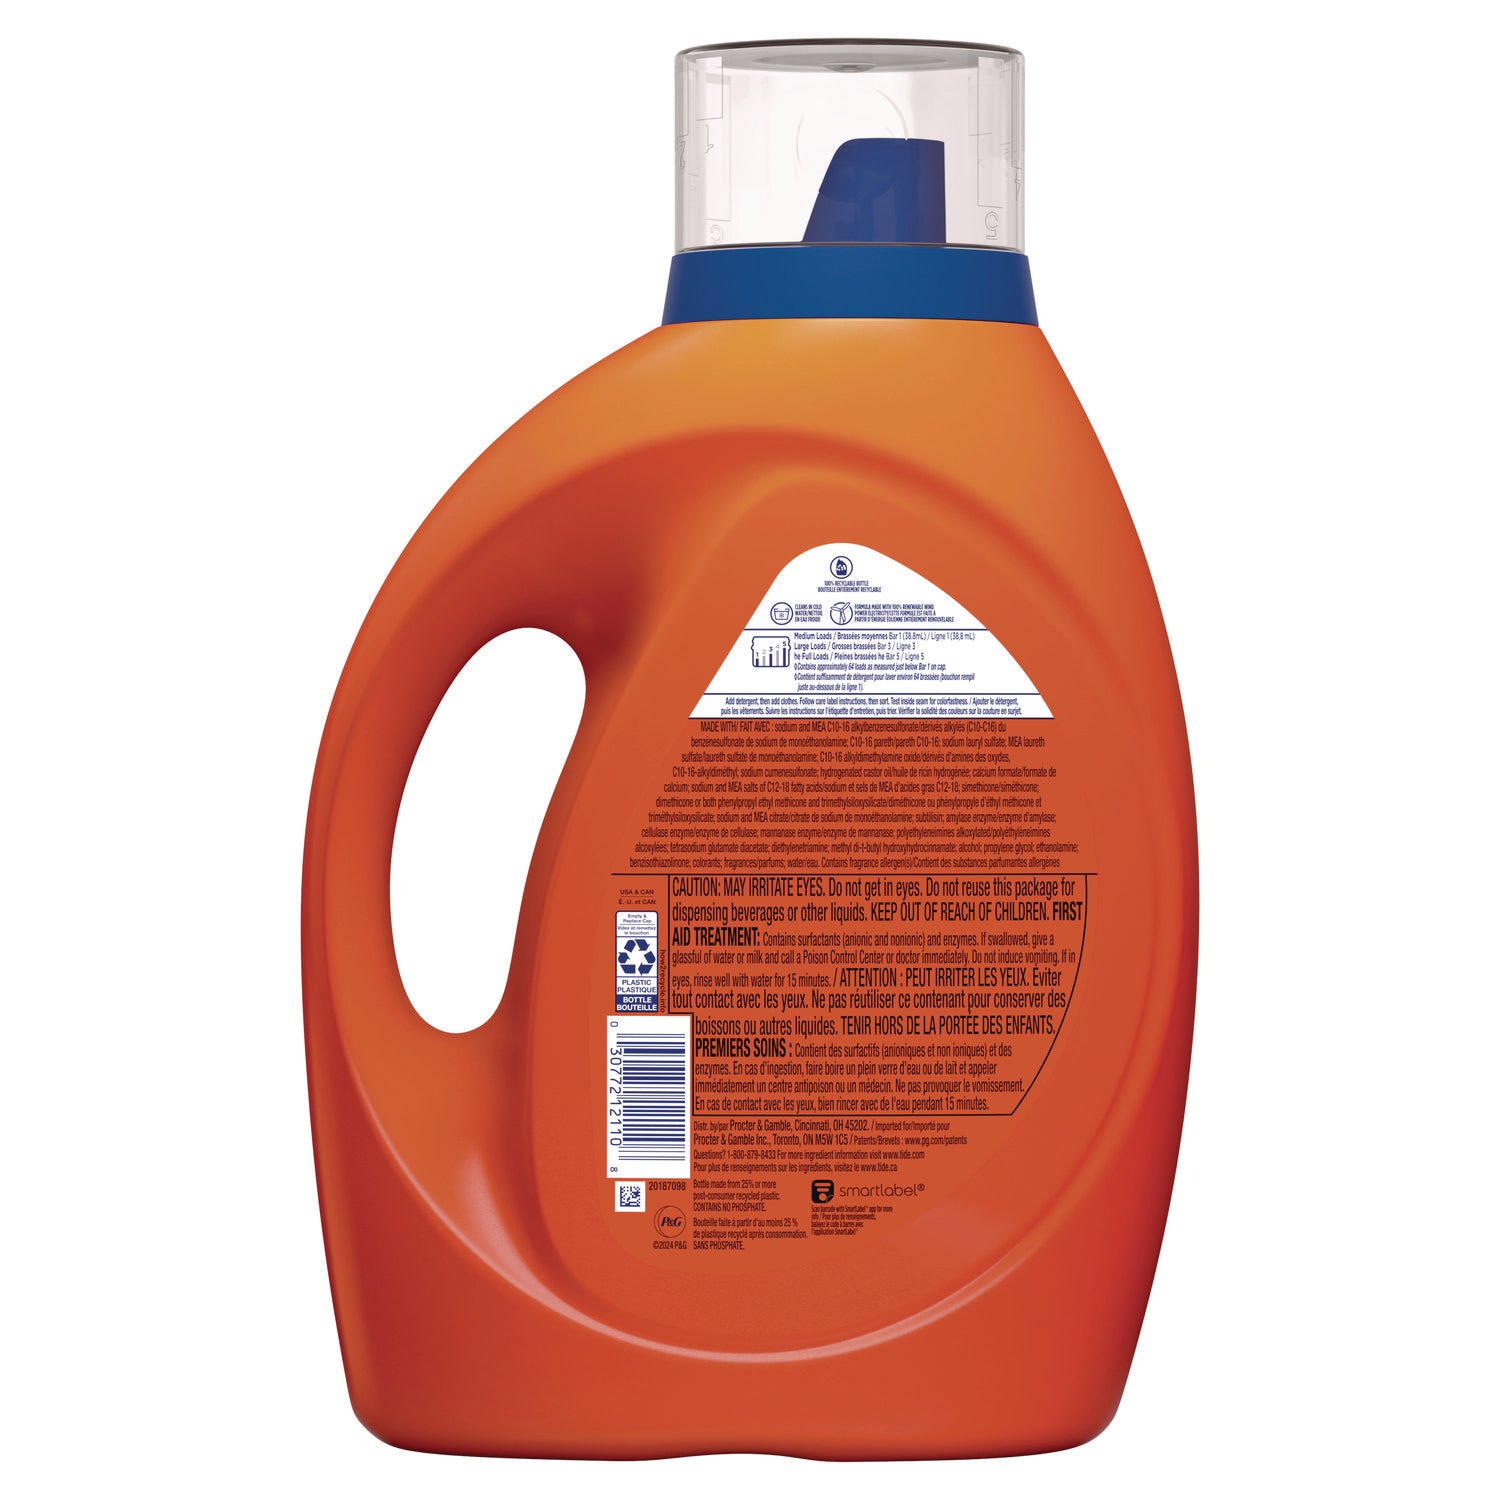 he-laundry-detergent-original-scent-liquid-64-loads-84-oz-bottle-4-carton_pgc12110ct - 4